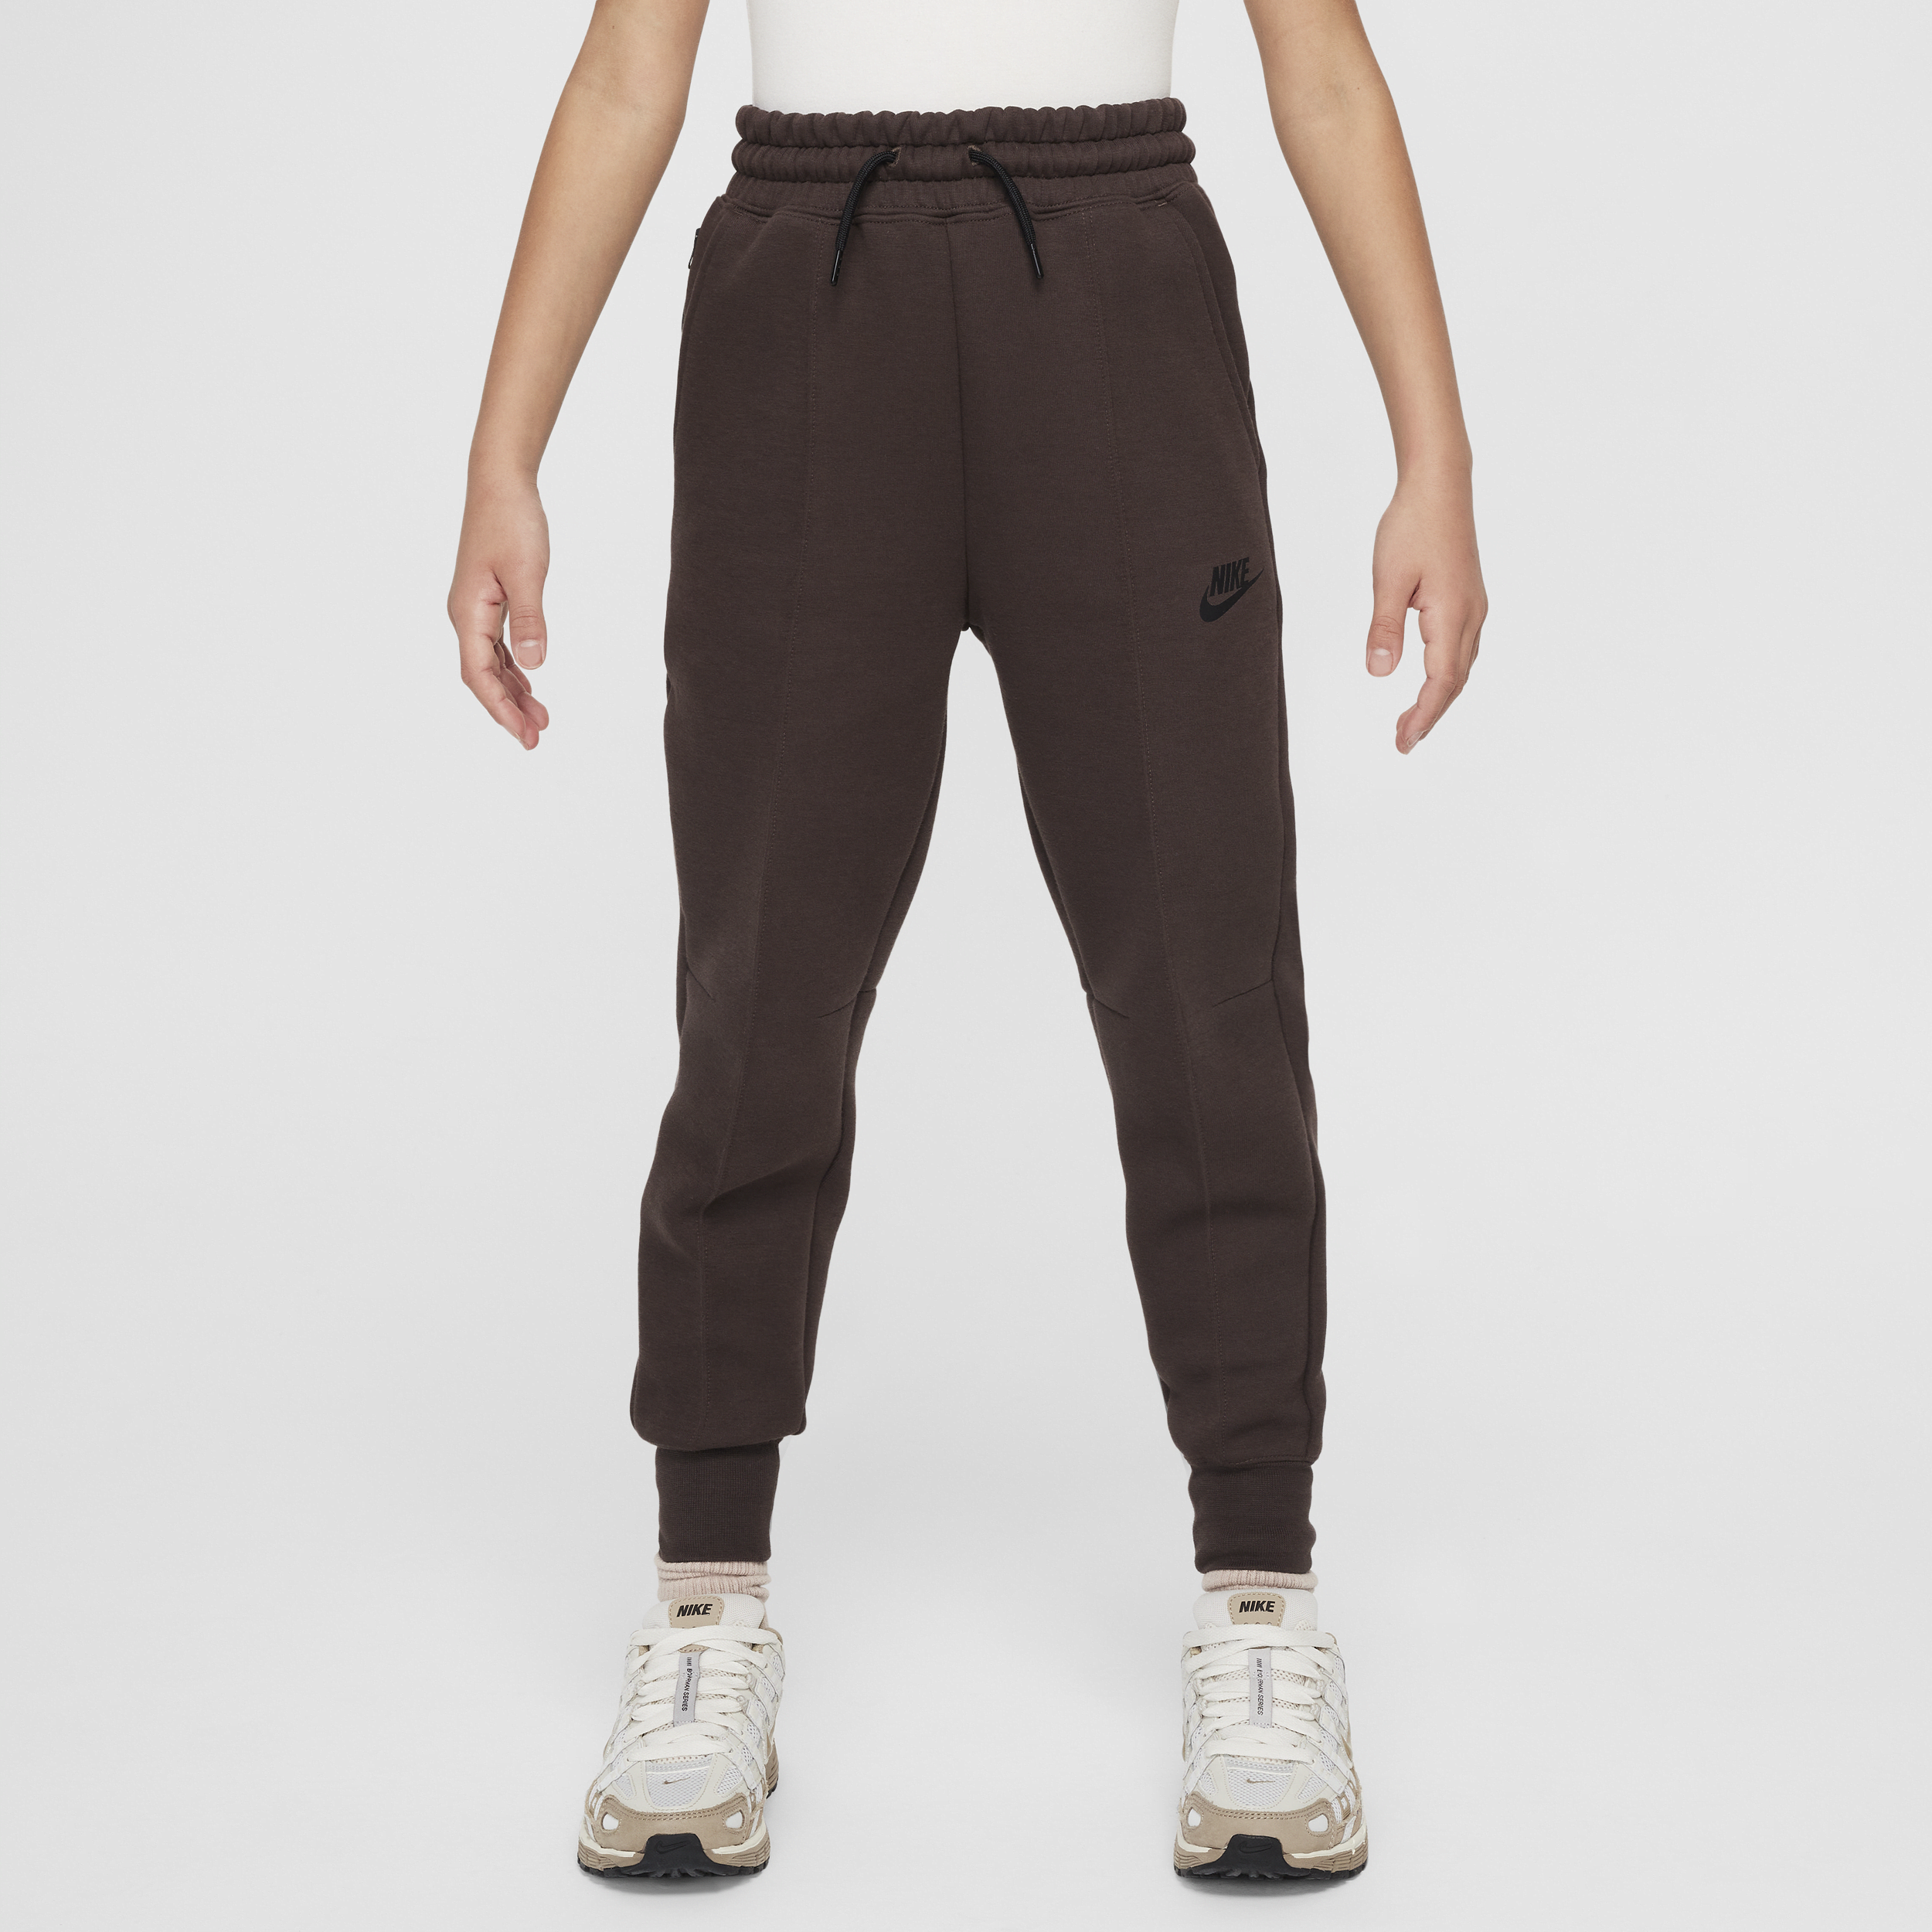 Nike Sportswear Tech Fleece joggingbroek voor meisjes - Bruin